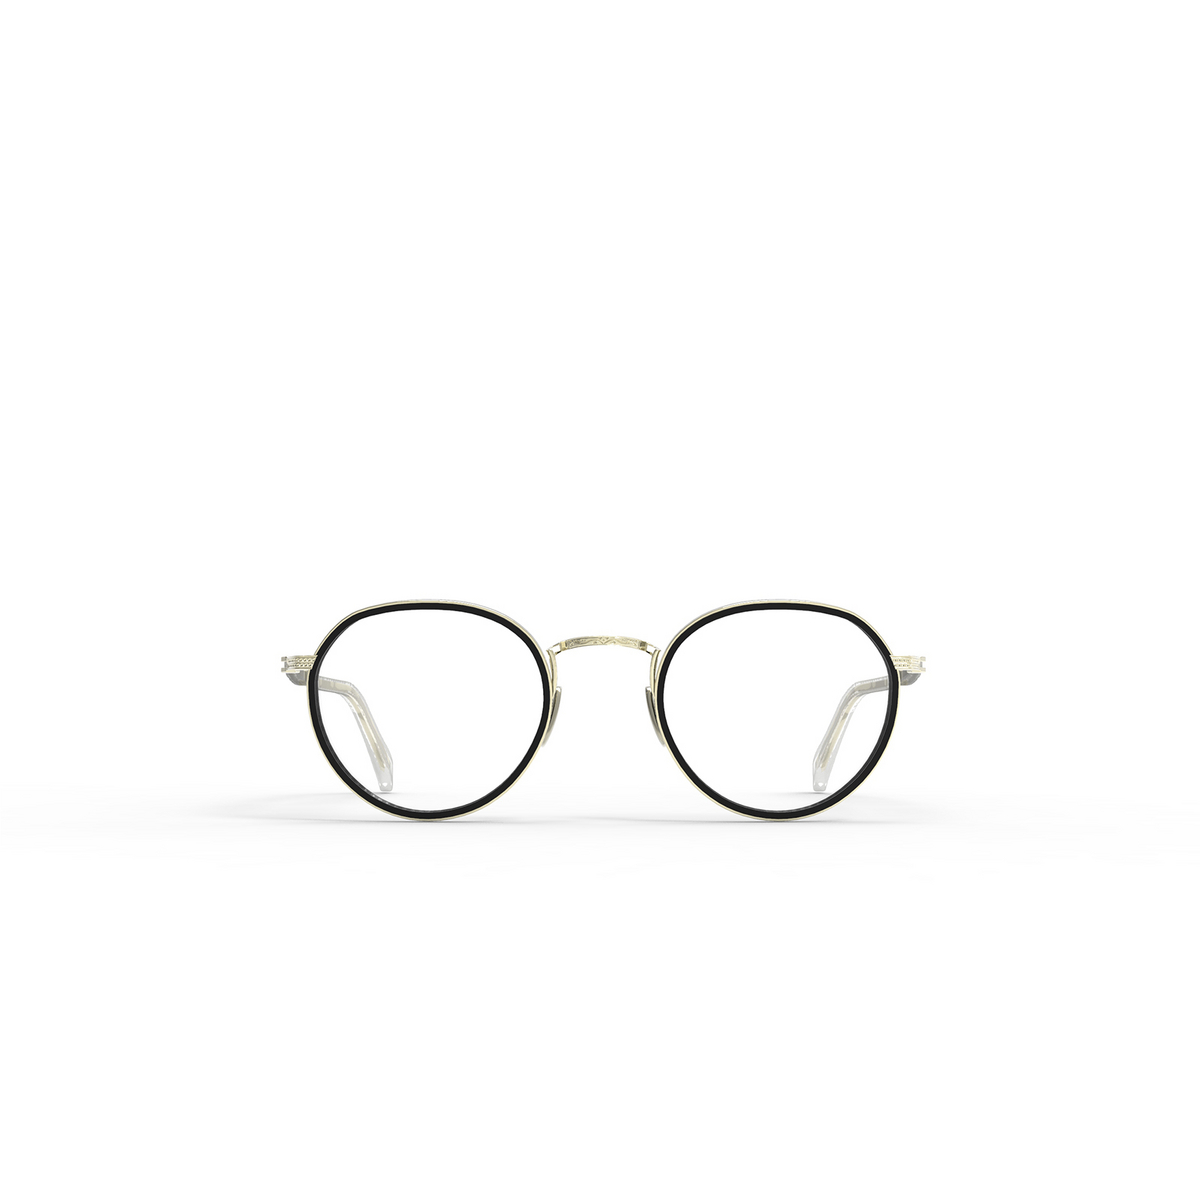 Mr. Leight BILLIE C Eyeglasses BK-12KG Black-12K White Gold - front view